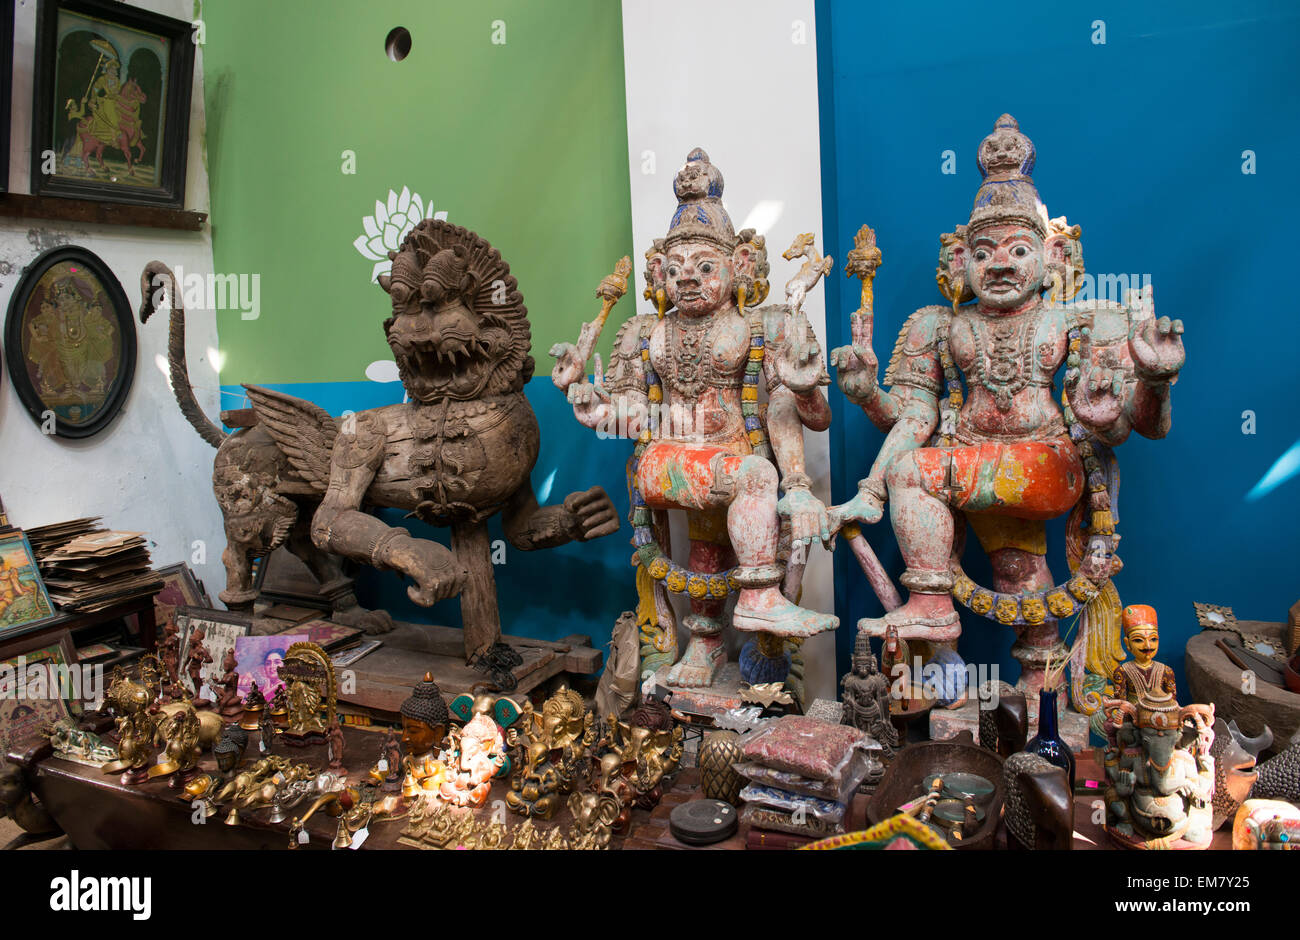 Antiquités et objets dans un magasin à Ville juif, fort Kochi, Kerala Inde Banque D'Images